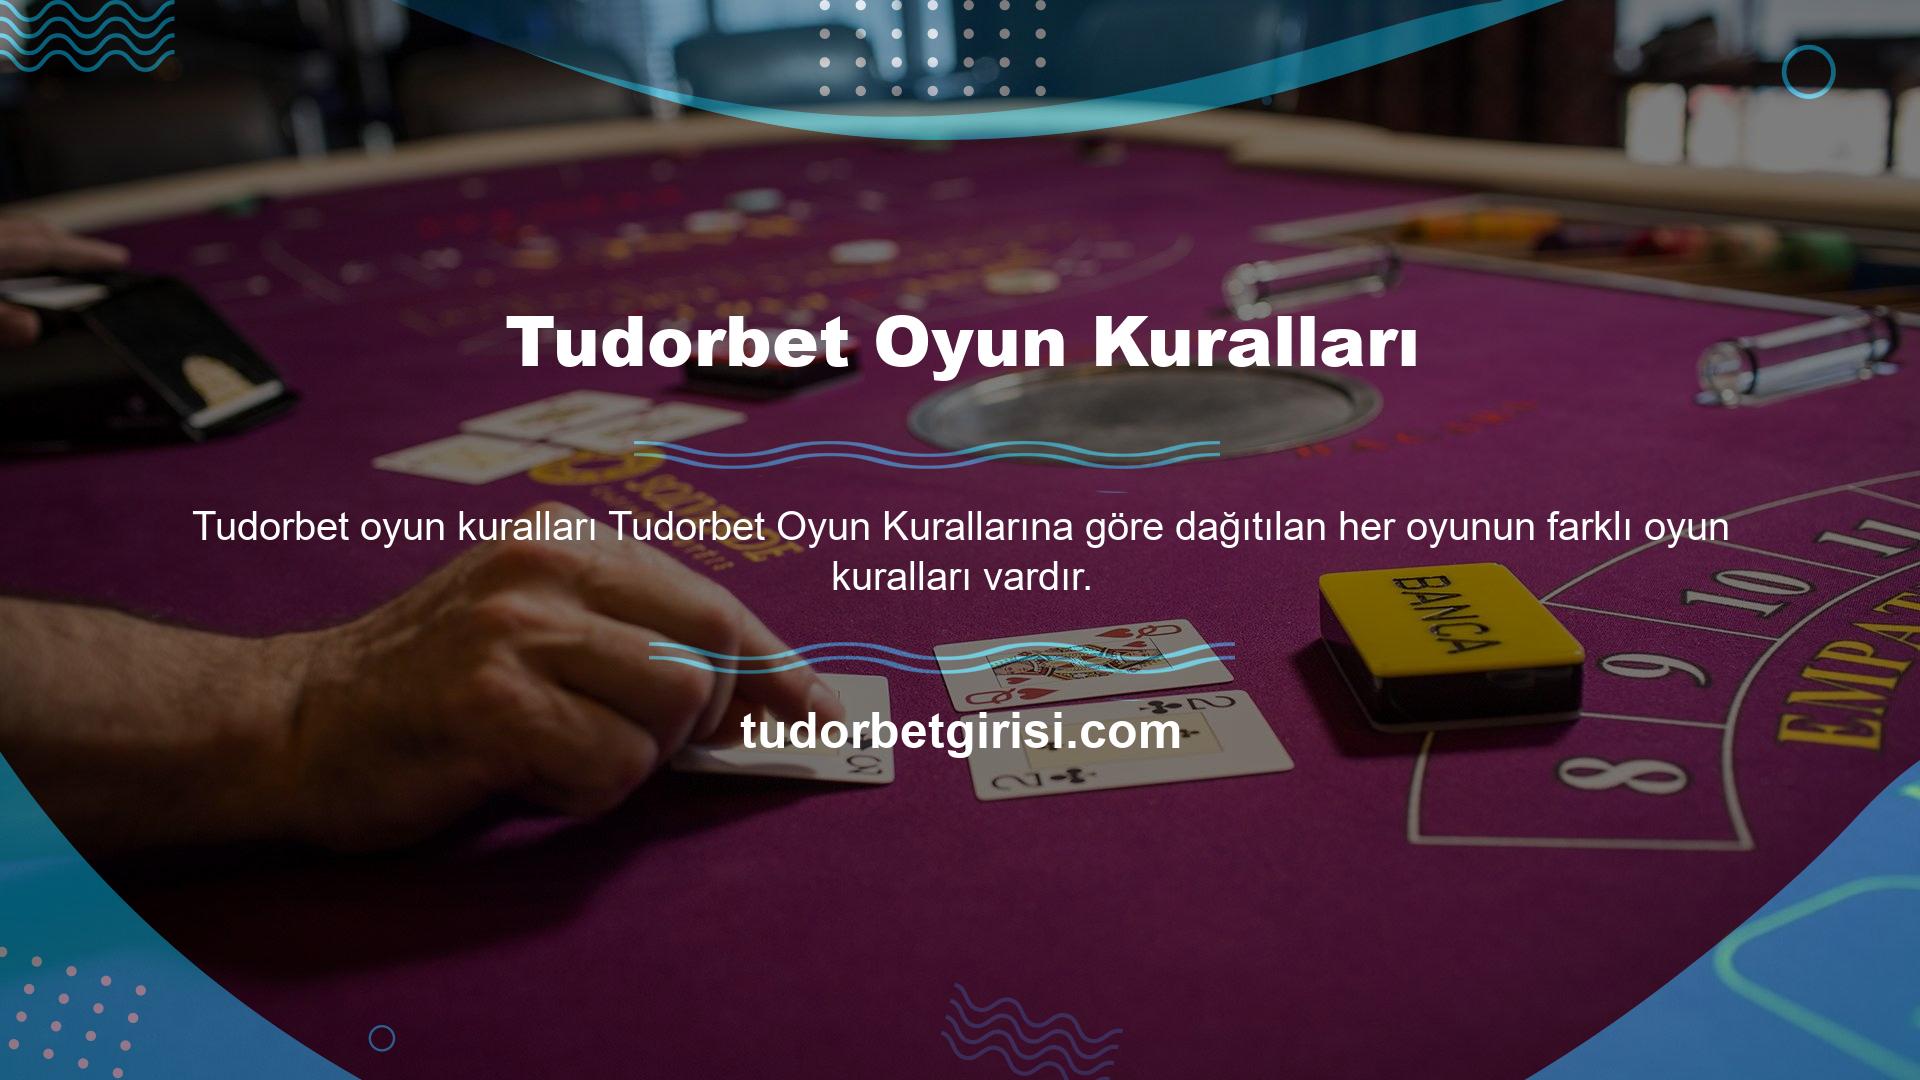 Türk pokerinin kurallarını öğrenmiş oyuncular oynamayı kolay bulacaktır